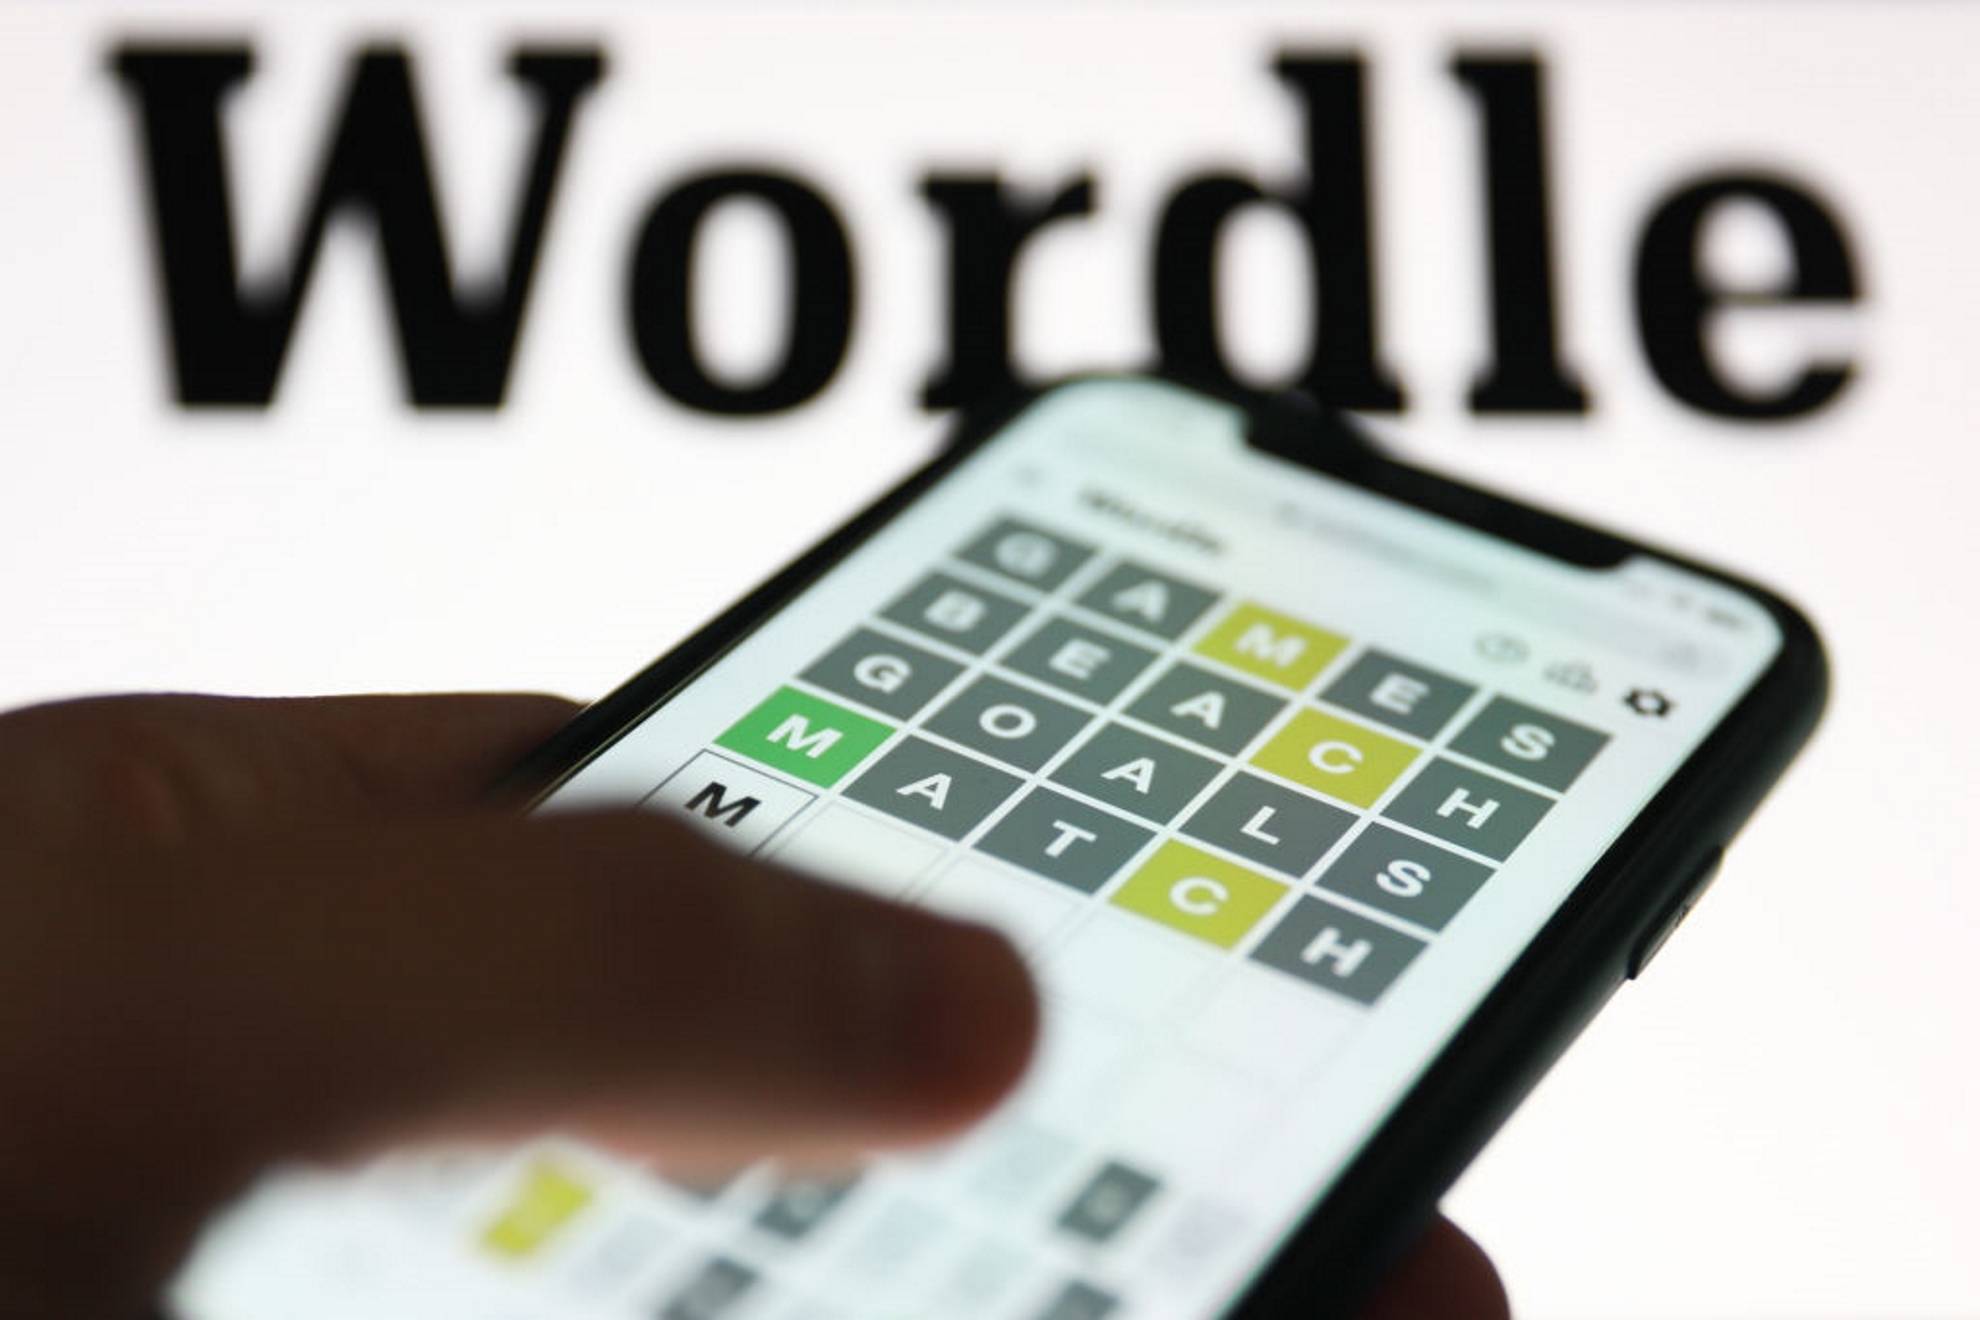 Wordle espaol hoy, 24 de marzo: normal, tildes y cientfico | Soluciones y pistas para adivinar la palabra